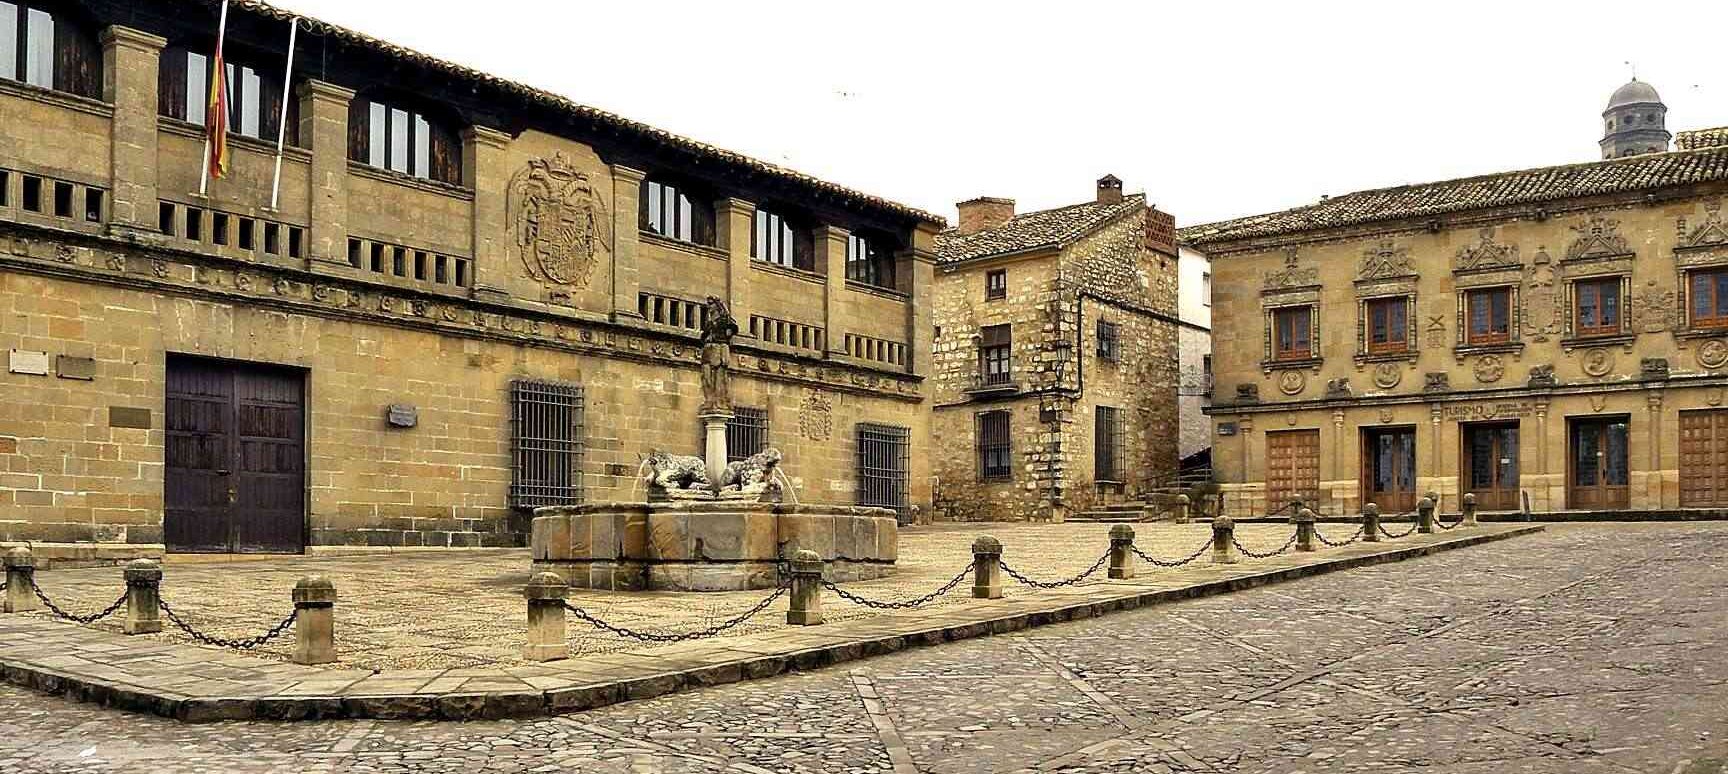 MUSEO CIUDAD DE BAEZA		Baeza	Jaén